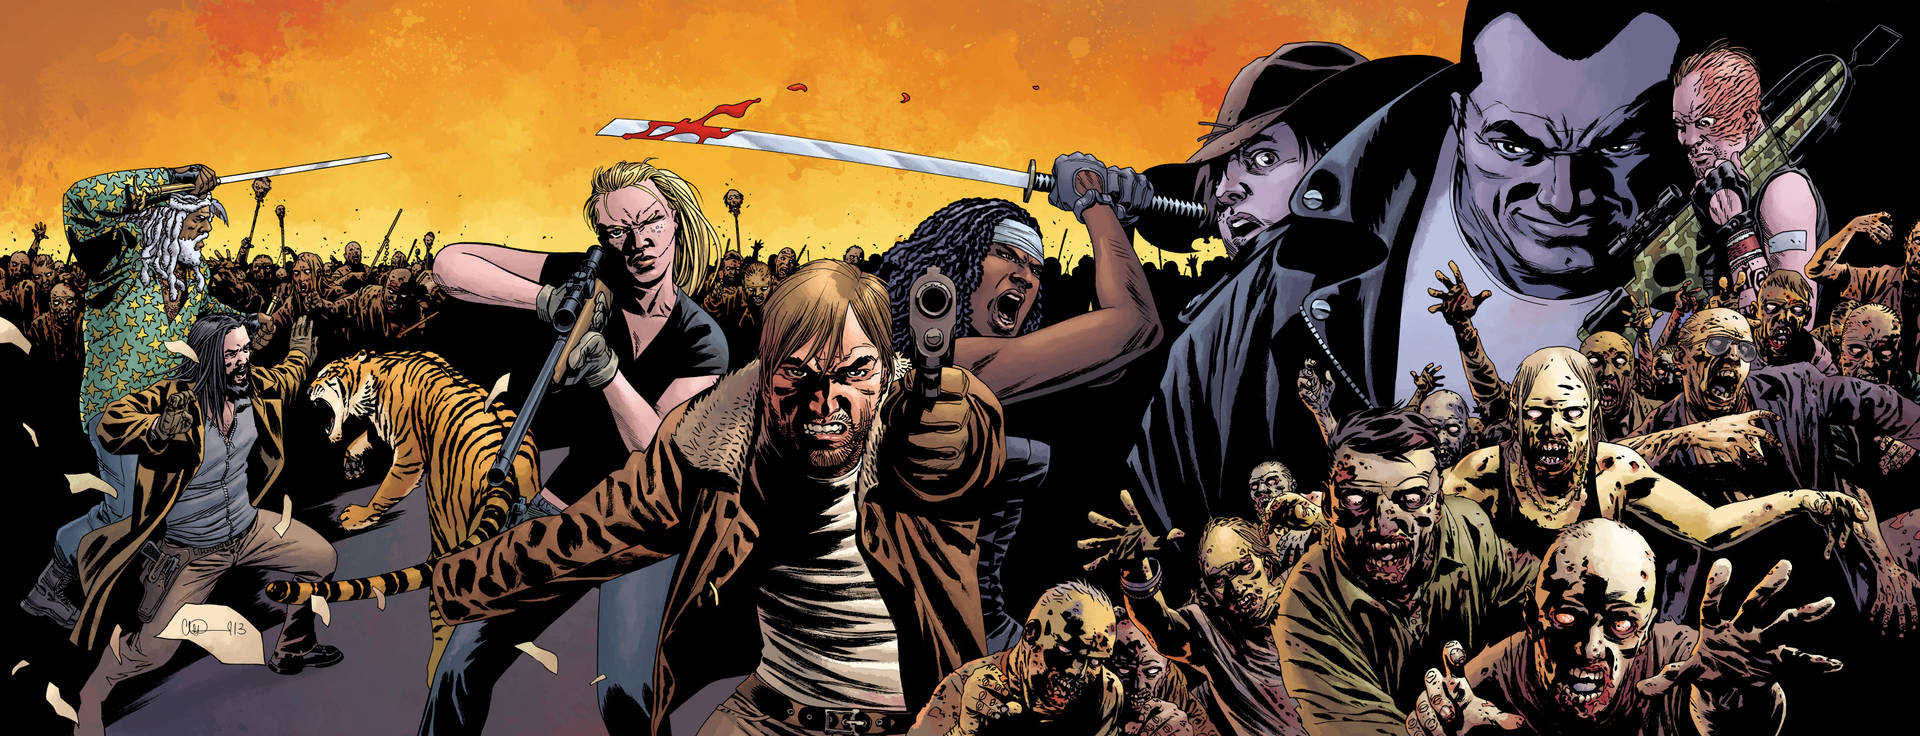 Negan fra The Walking Dead Comics. Wallpaper